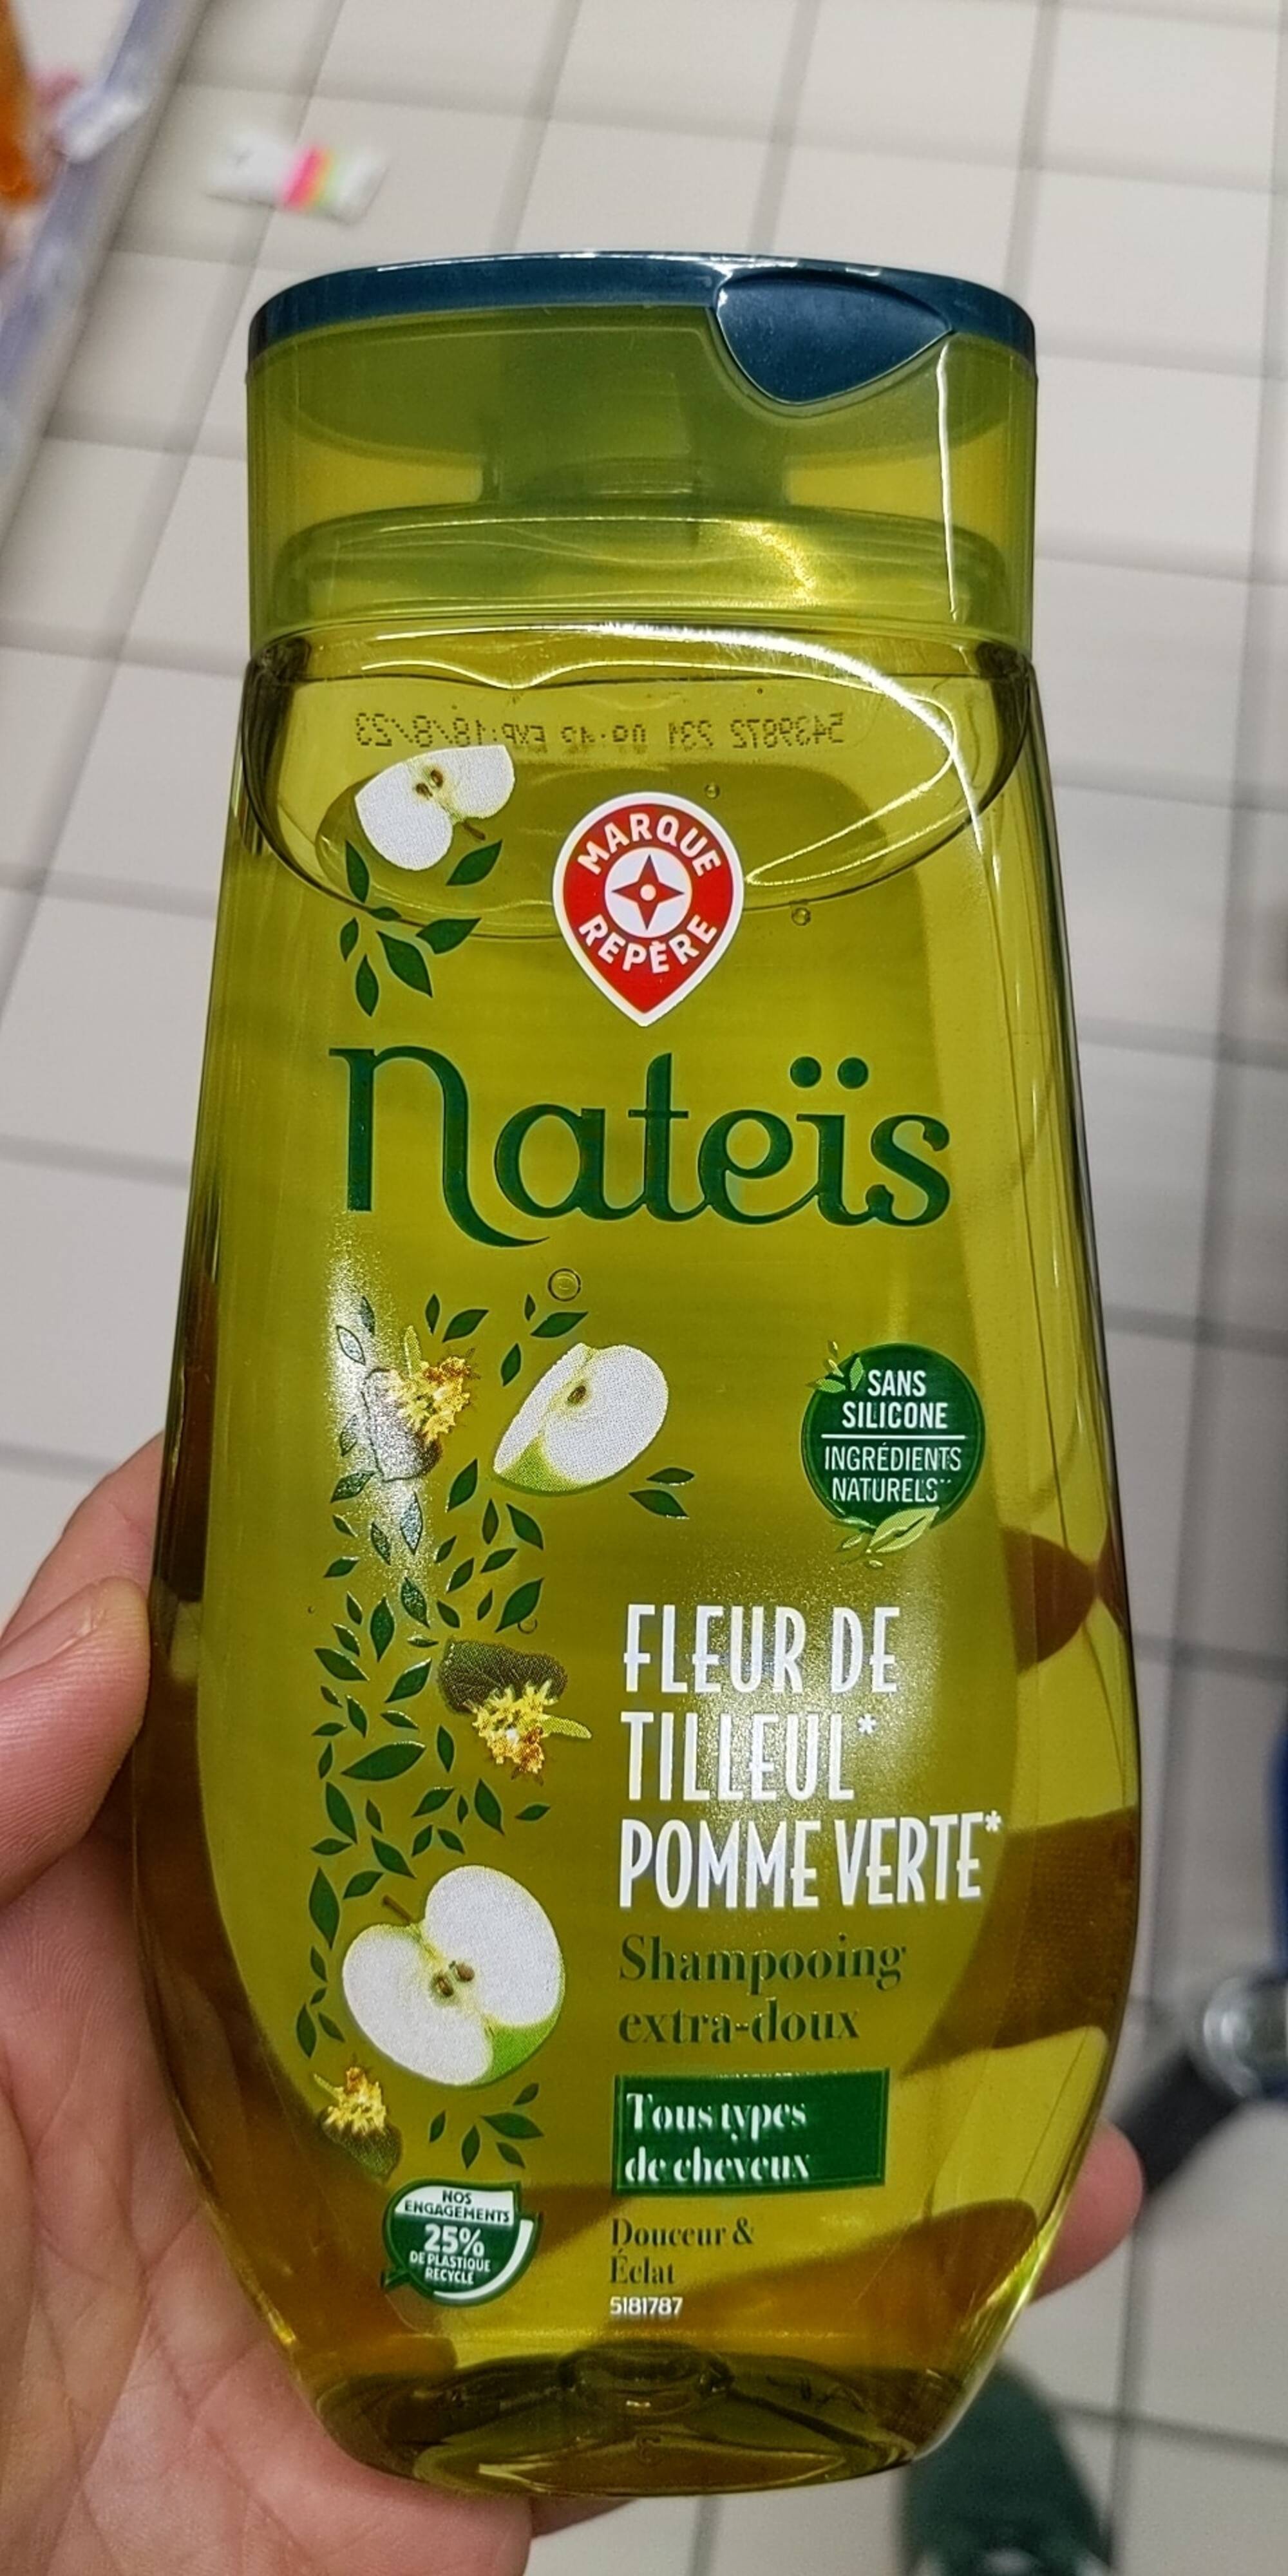 MARQUE REPÈRE - Nateïs fleur de tilleul pomme verte - Shampooing extra doux